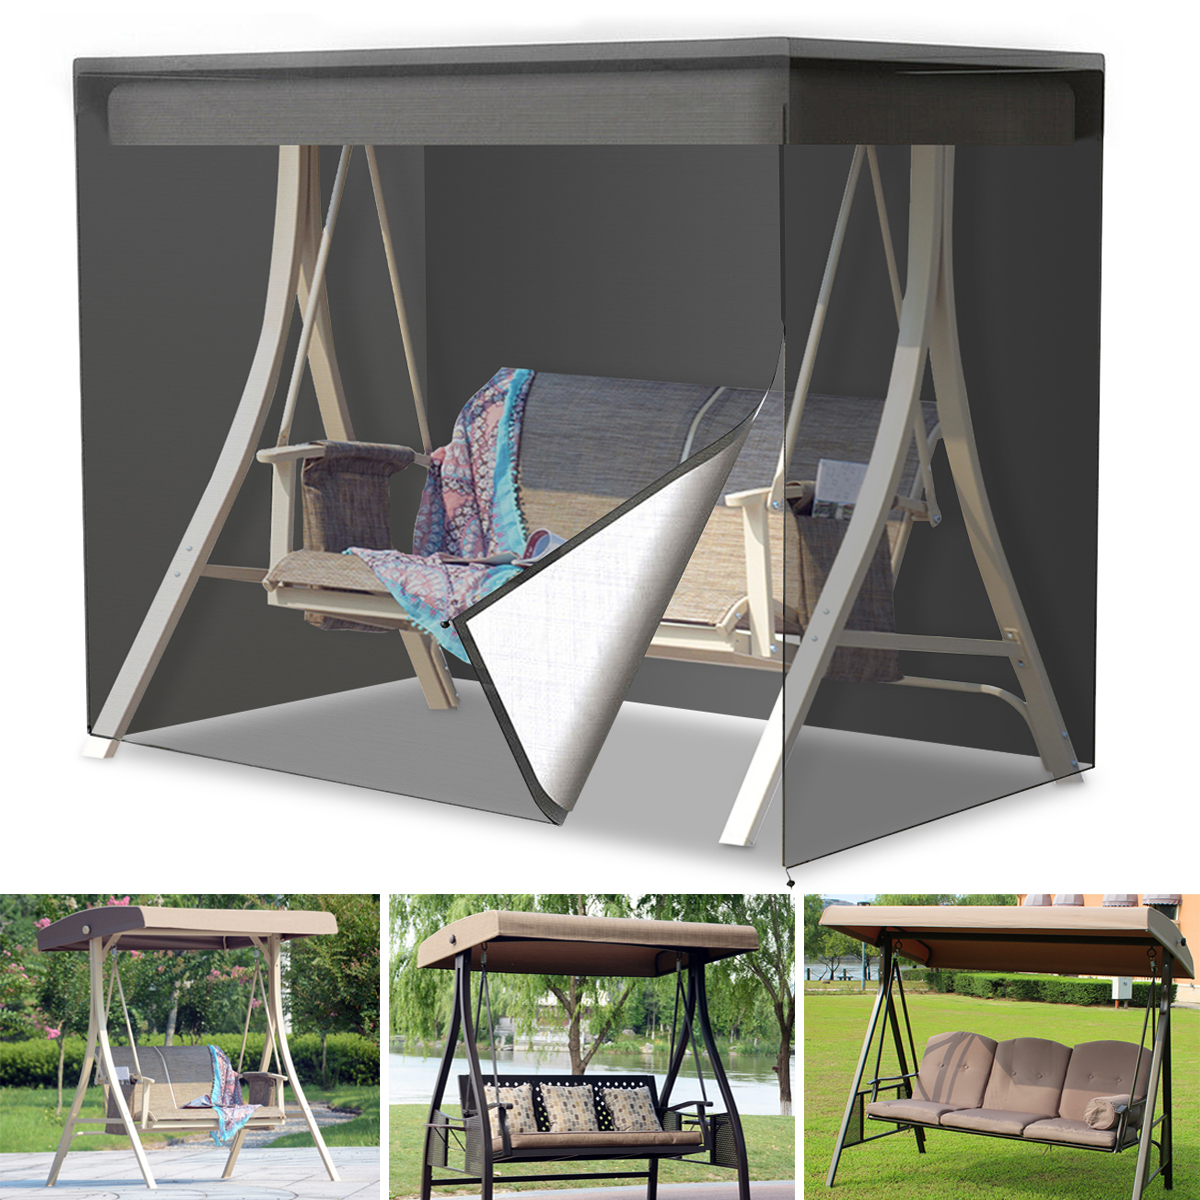 3 Seater Swing Seat Hammock Cover Outdoor Garden Patio Furniture Waterproof 420D